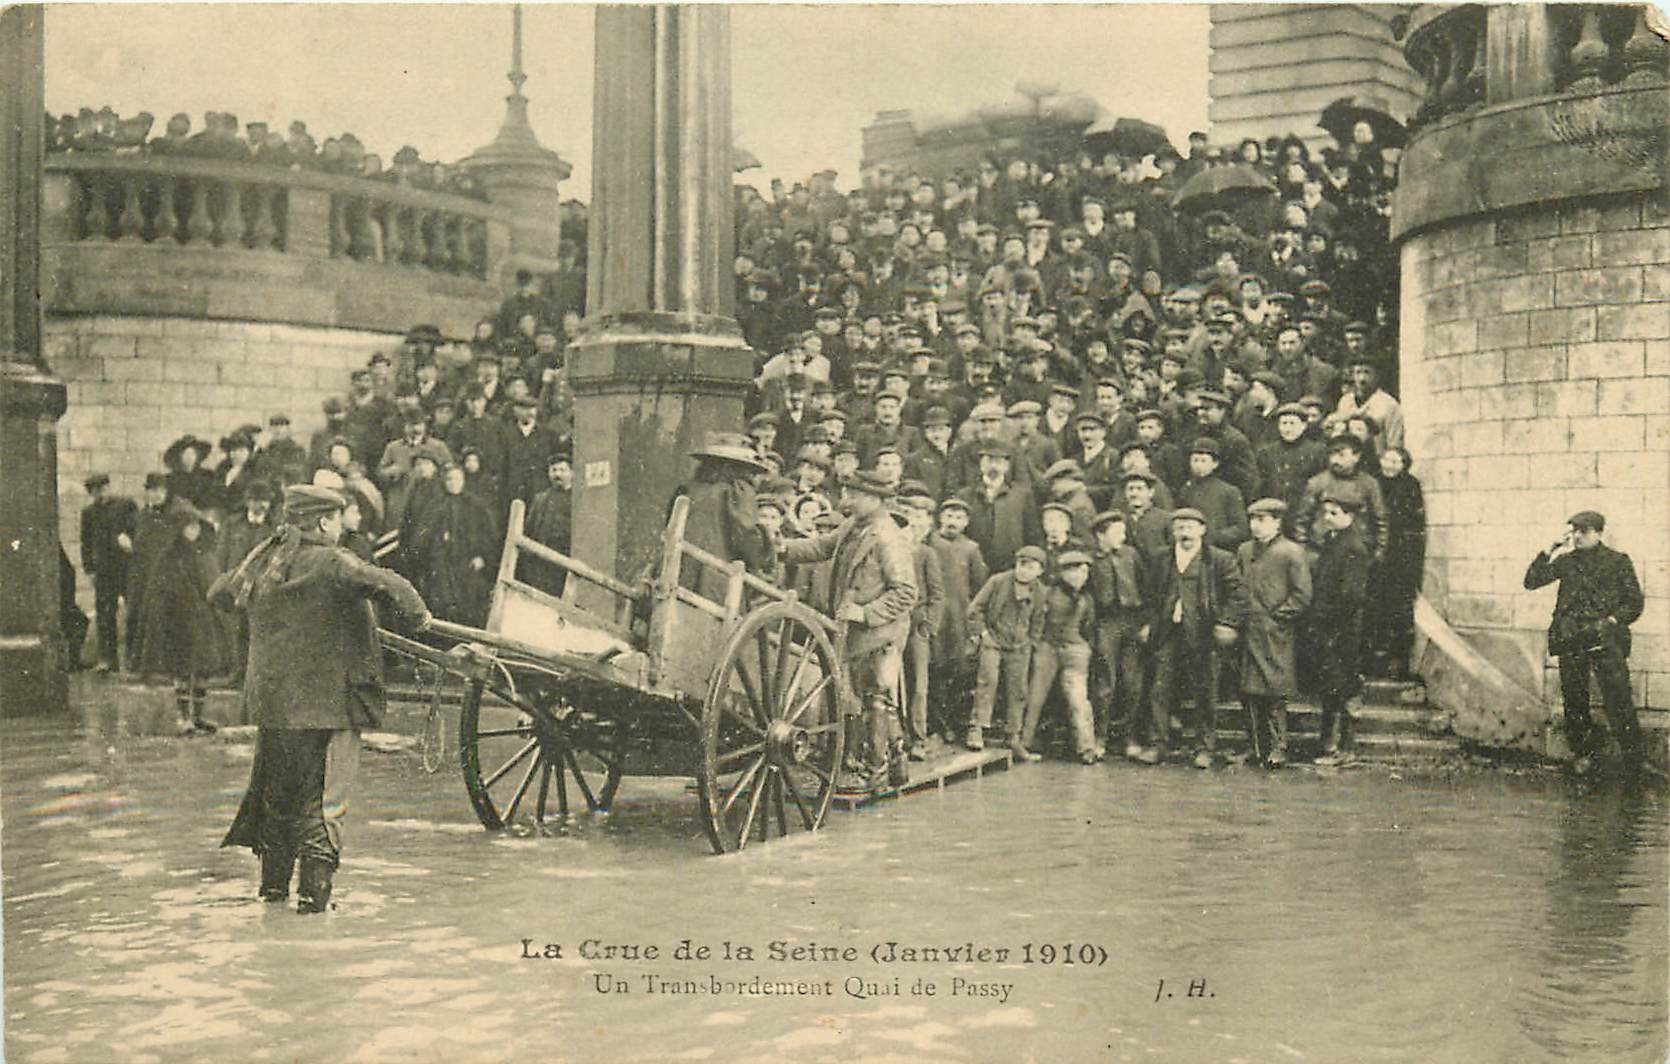 WW PARIS. Inondations Crue 1910. Transbordement Quai de Passy